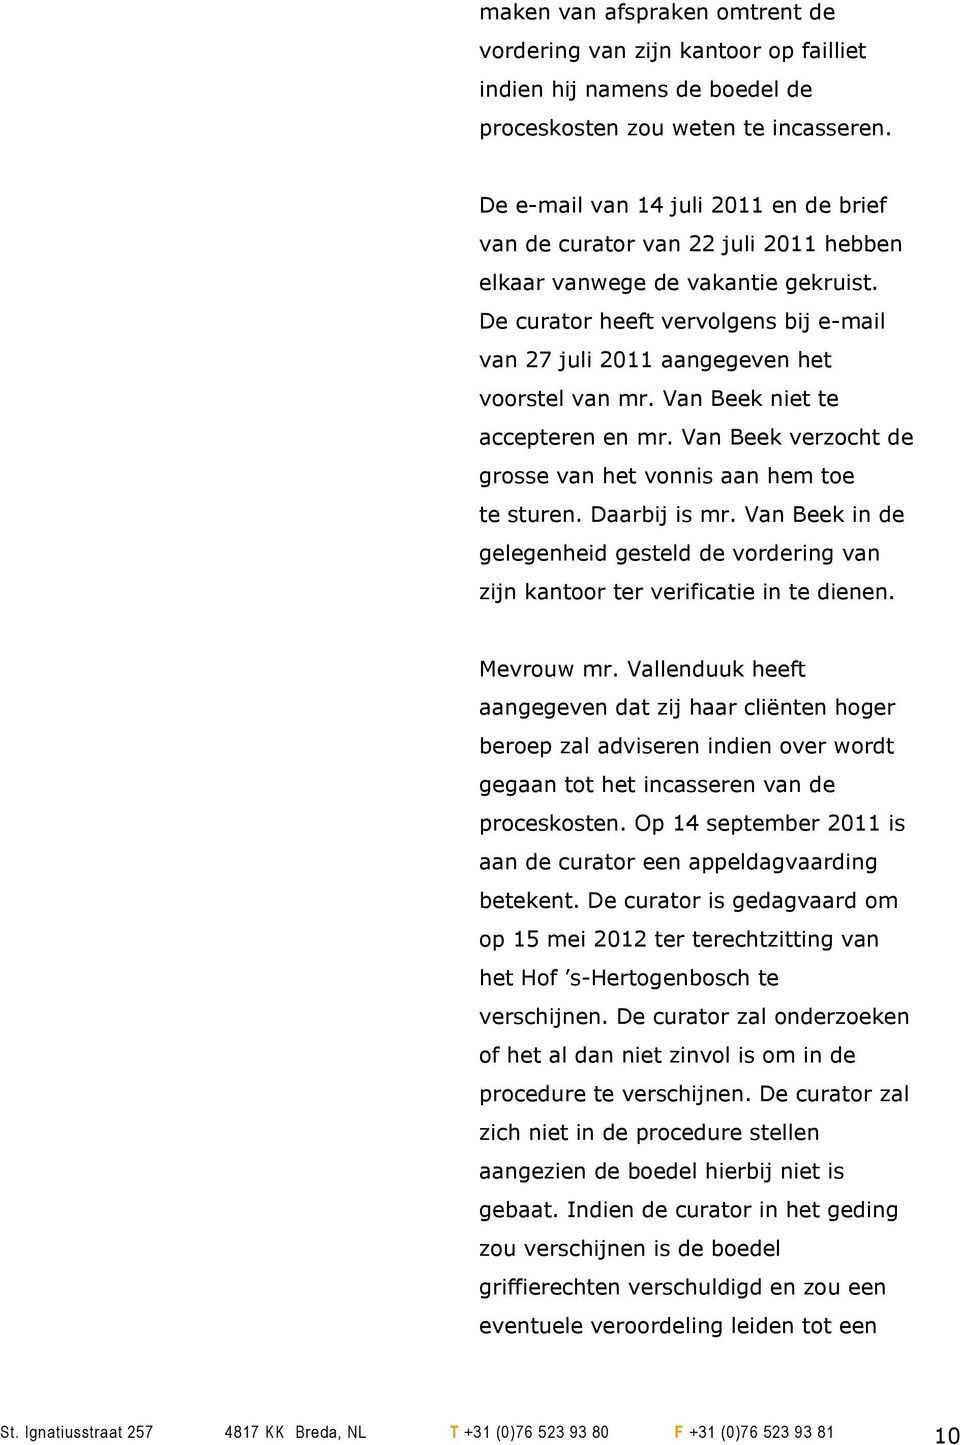 De curator heeft vervolgens bij e-mail van 27 juli 2011 aangegeven het voorstel van mr. Van Beek niet te accepteren en mr. Van Beek verzocht de grosse van het vonnis aan hem toe te sturen.